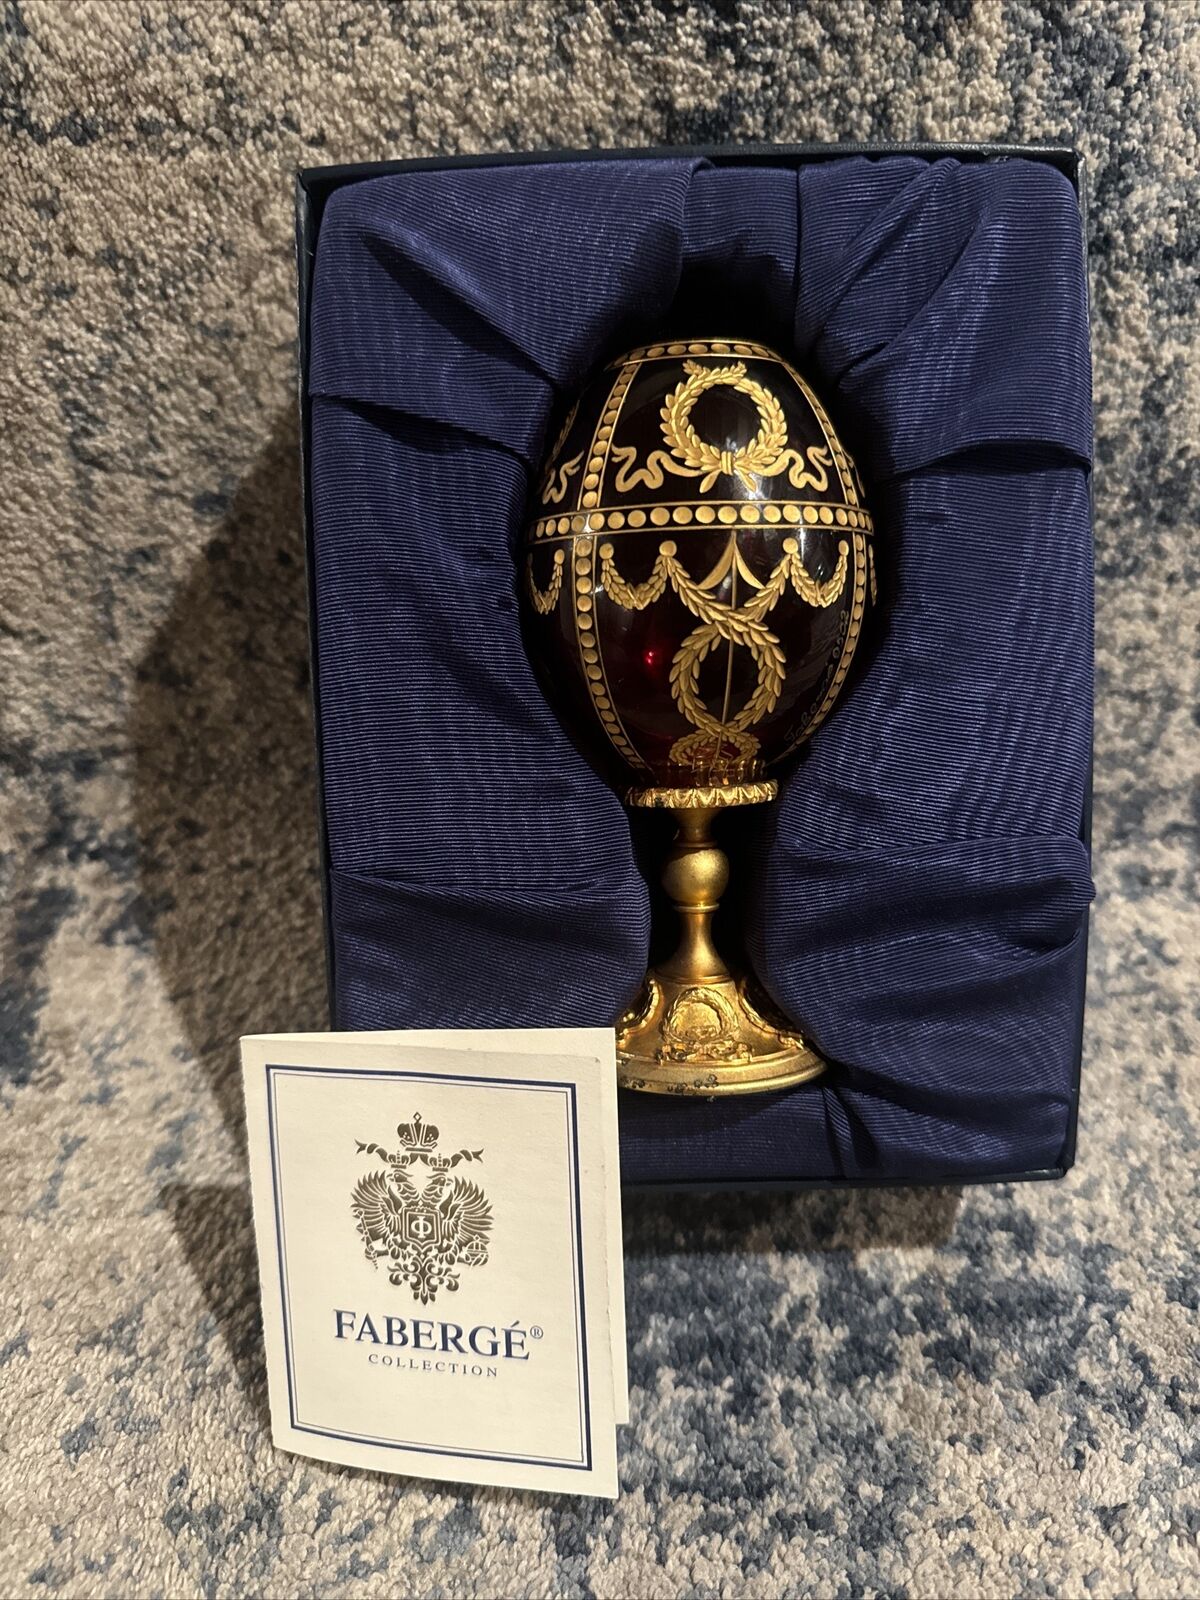 Fabergé Crystal Egg “Rosebud” No. 502 - with original box & CoA - AUTHENTIC